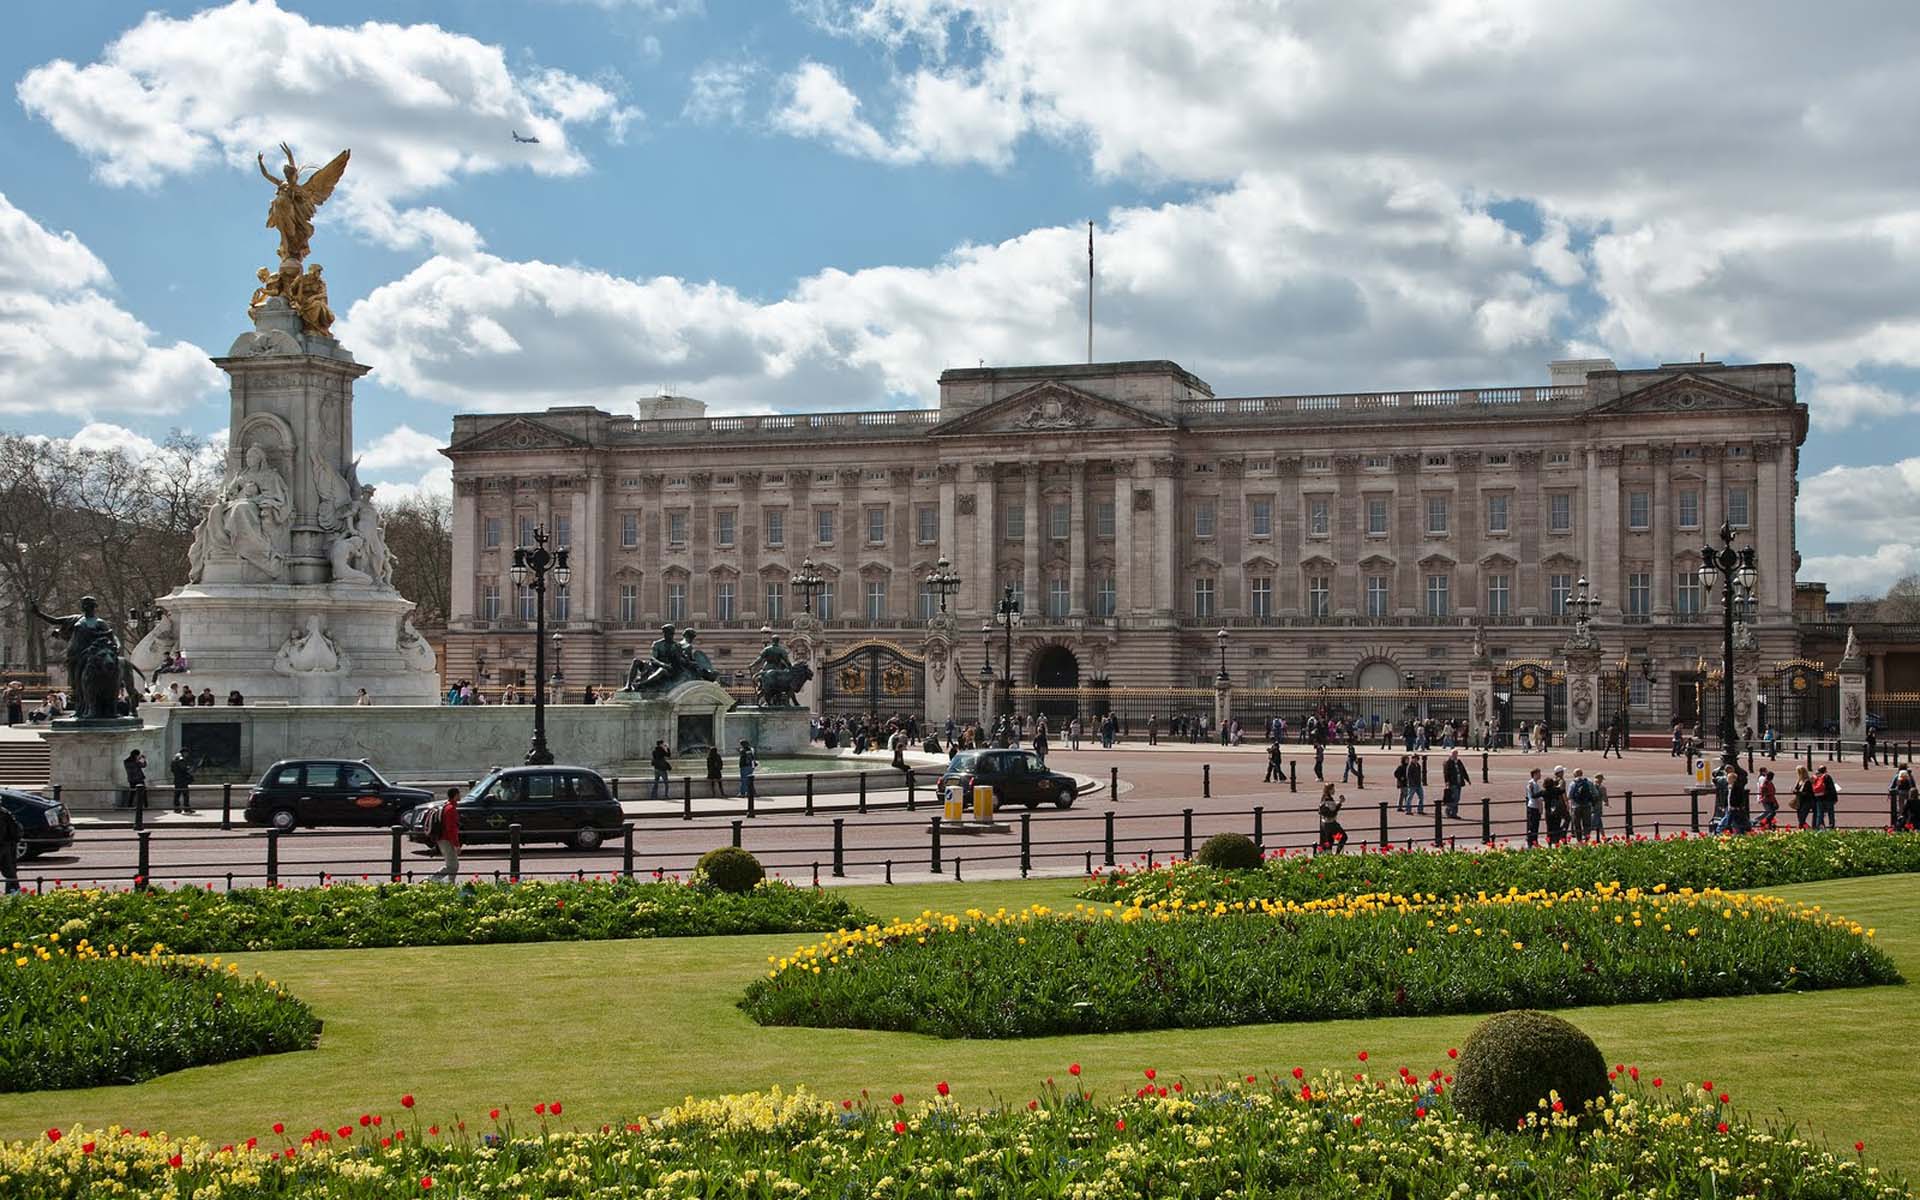 Buckingham Palace London wallpaper. Buckingham Palace London stock